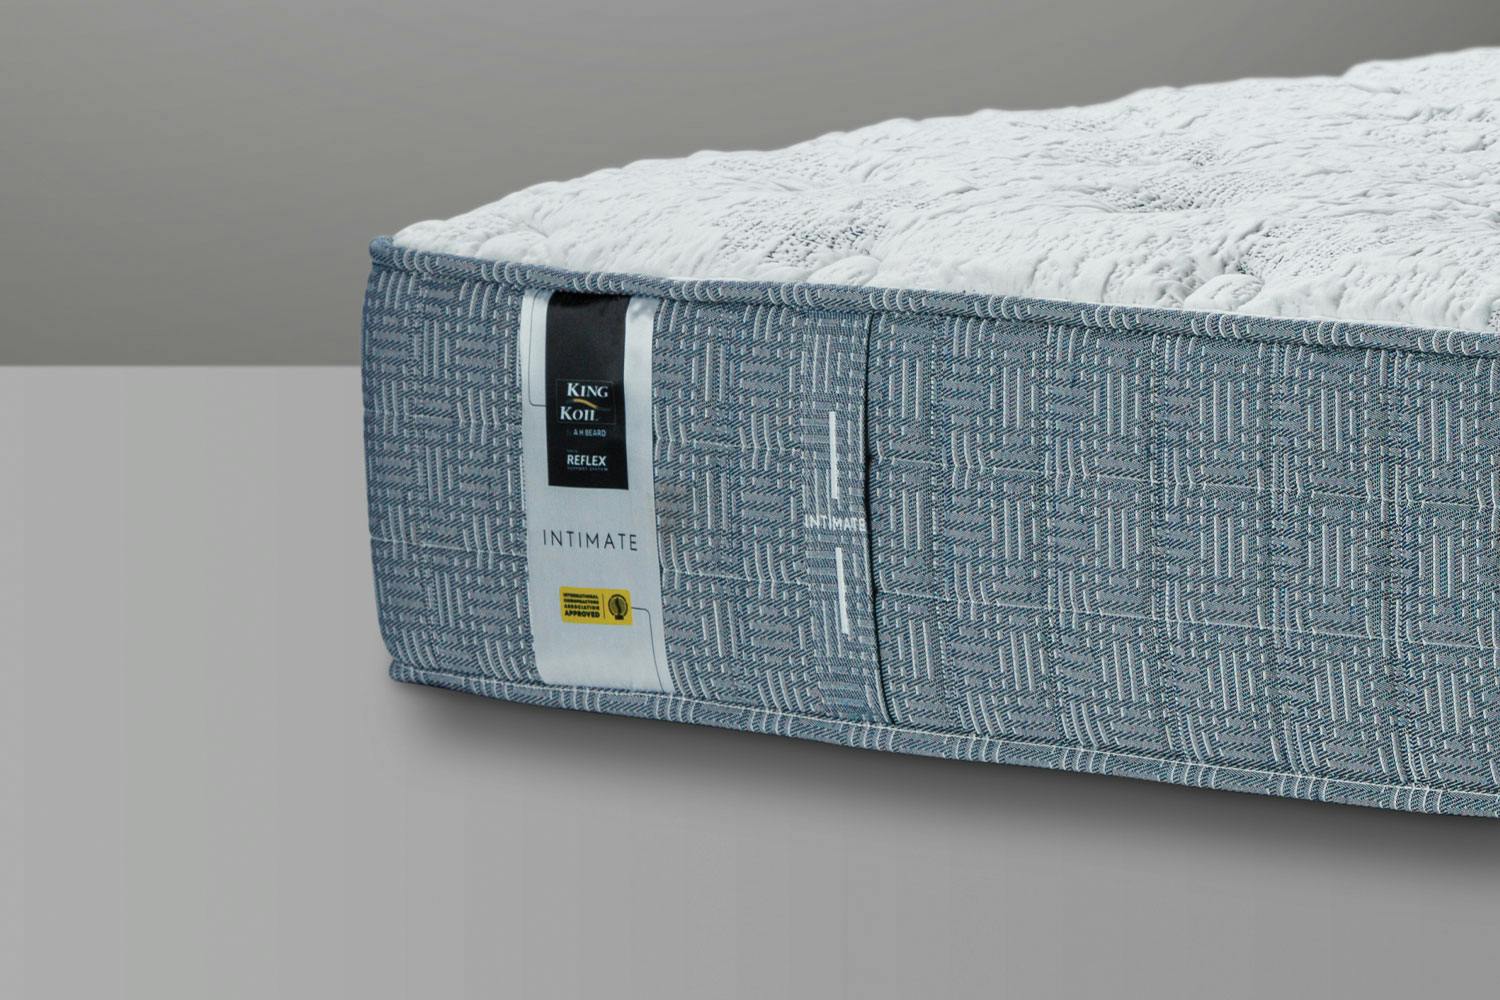 nouveau extra firm king mattress